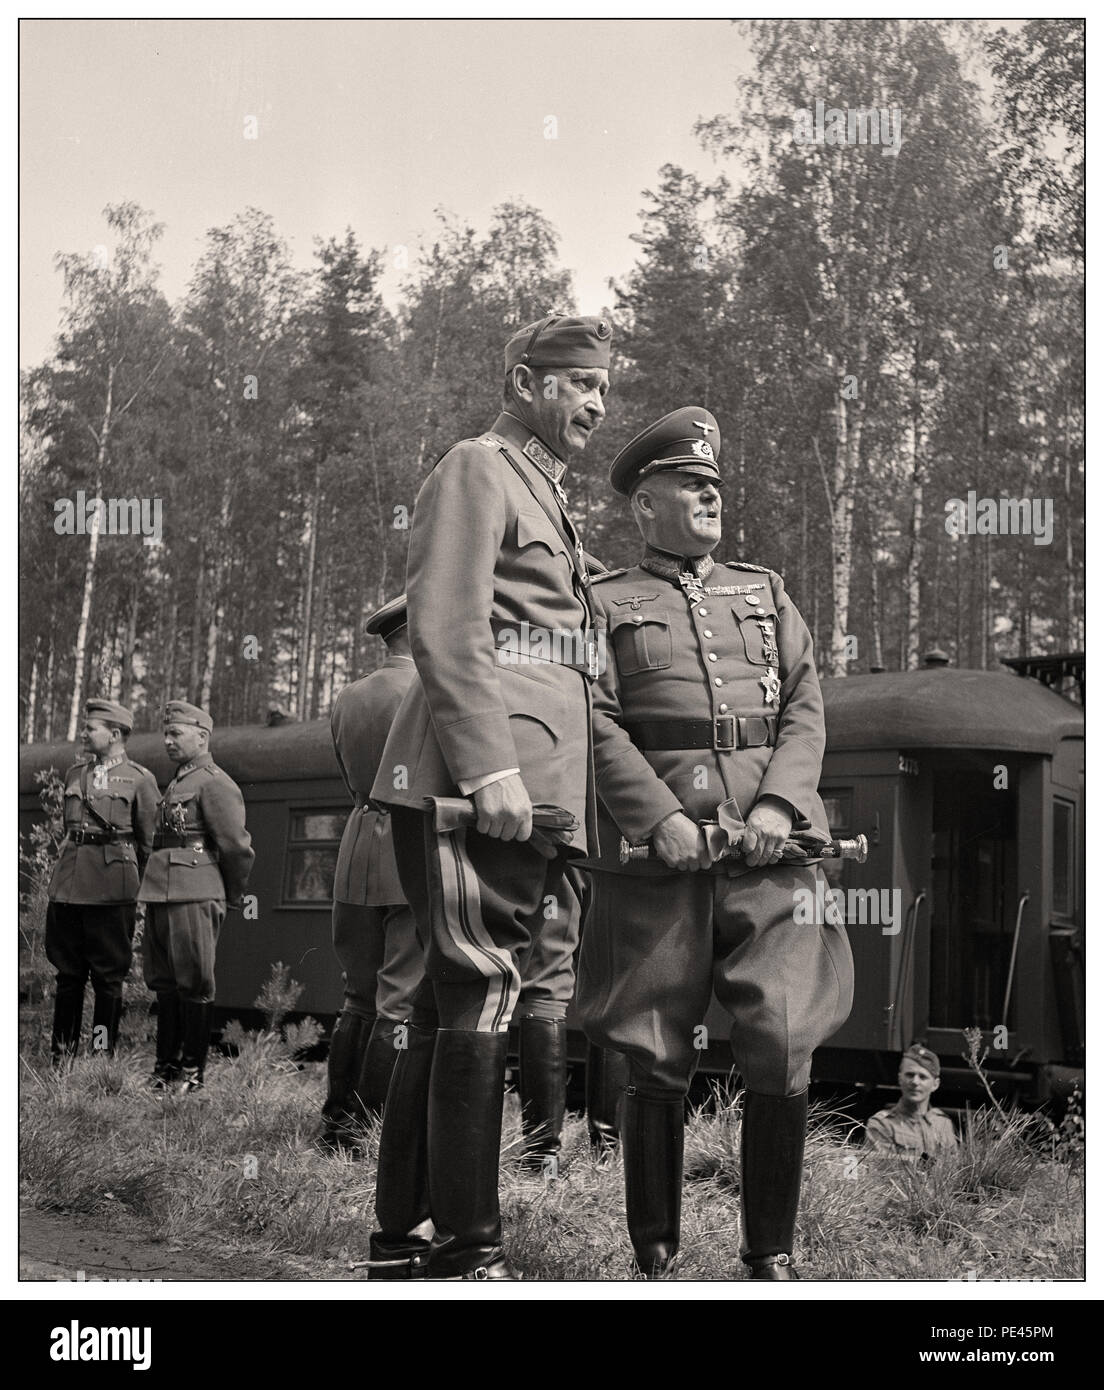 MANNERHEIM / KEITEL in attesa di Adolf Hitler. Adolf Hitler decise di visitare la Finlandia il 4 giugno 1942, apparentemente per congratularmi con Mannerheim sul suo settantacinquesimo compleanno. Ma Mannerheim non desidera incontrarlo nel suo quartier generale a Mikkeli o a Helsinki, come sarebbe parso come un ufficiale visita di stato. La riunione ha avuto luogo vicino a Imatra, nel sud-est della Finlandia ed è stato organizzato in segreto. Da Immola Airfield, Hitler, accompagnato dal Presidente Ryti, era azionato al luogo dove Mannerheim era in attesa in corrispondenza di un raccordo ferroviario. La riunione è stata inconcludente... Foto Stock